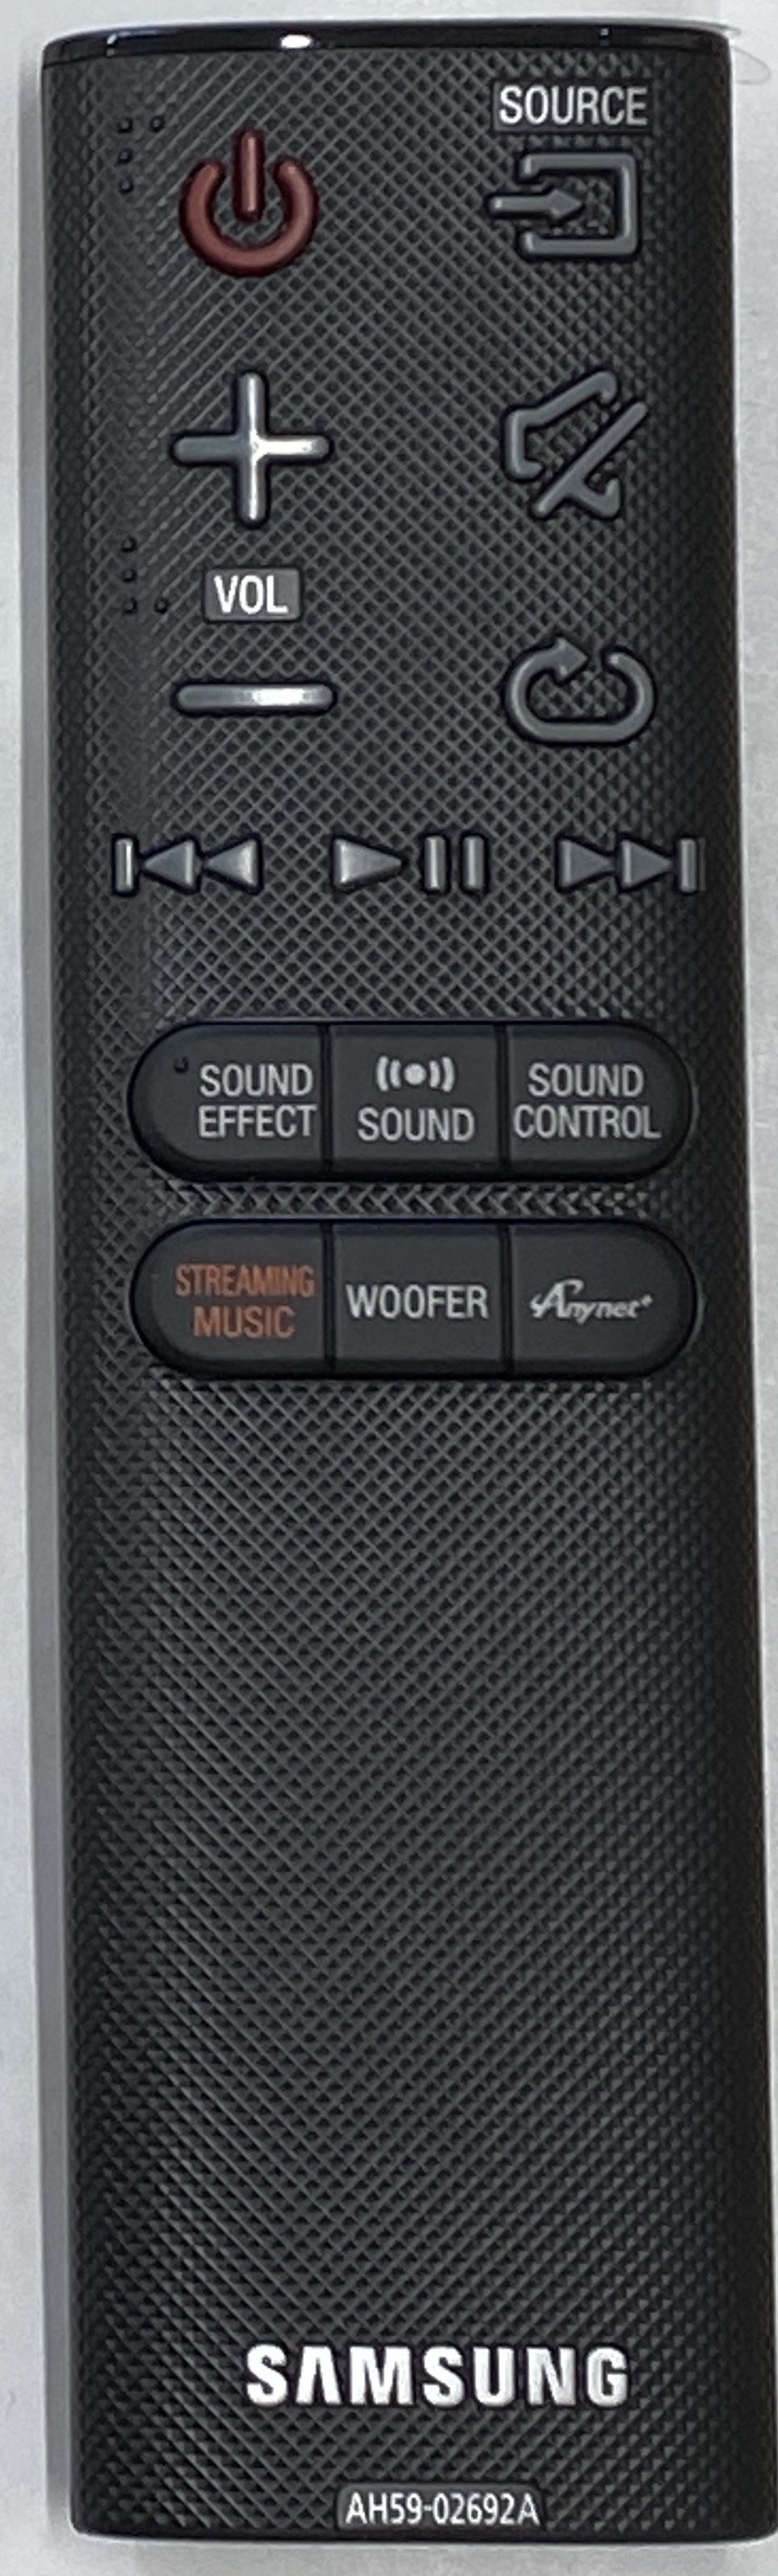 SAMSUNG HW-J661/XE Remote Control Original 